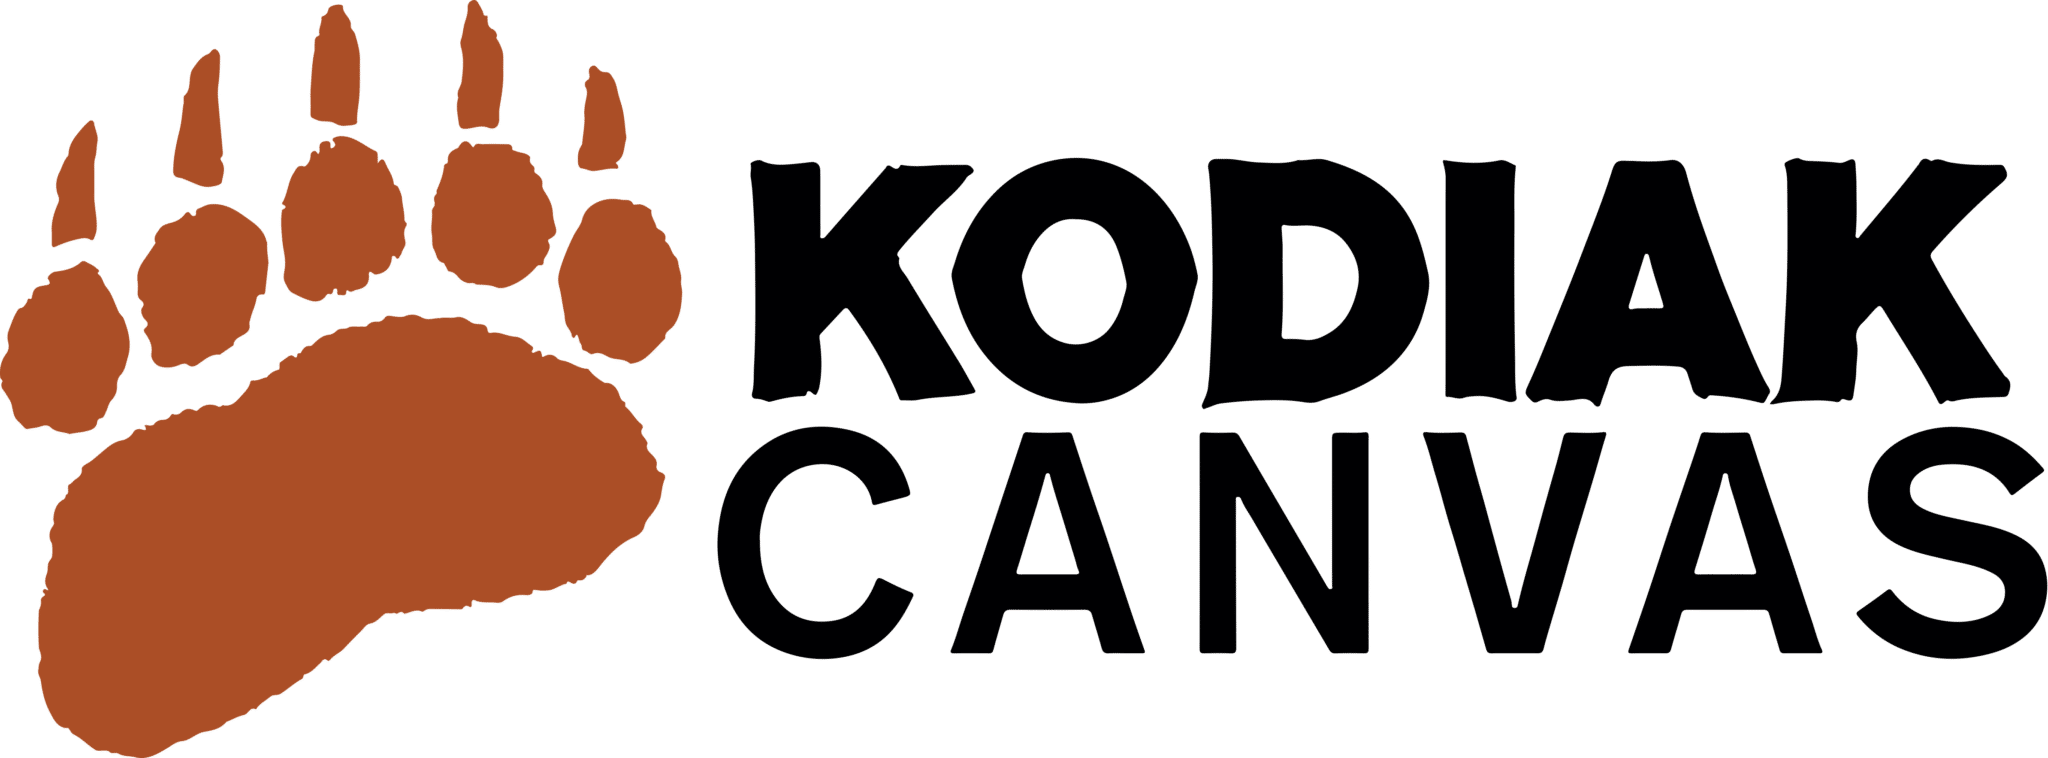 Kodiak Canvas Vector (1)